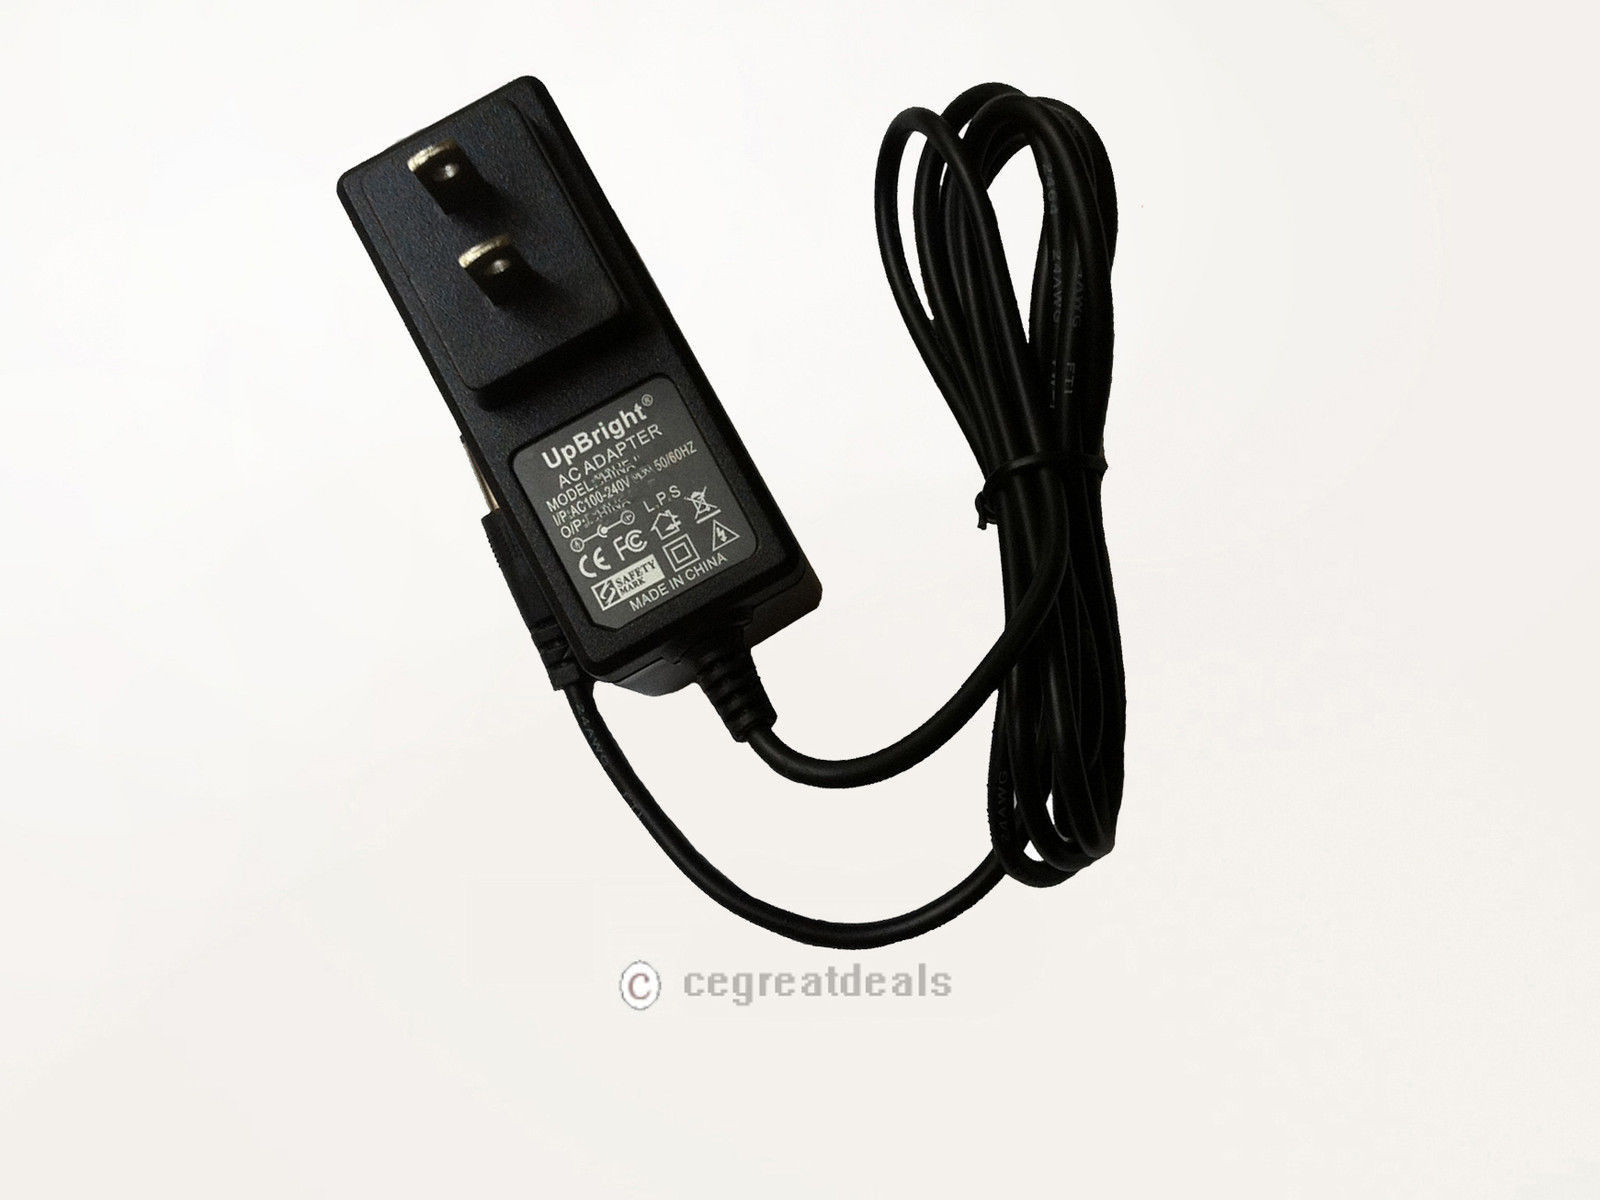 NEW AC Adapter For Polycom 1465-43019-001 SoundStation2 Avaya 2490 Power Supply